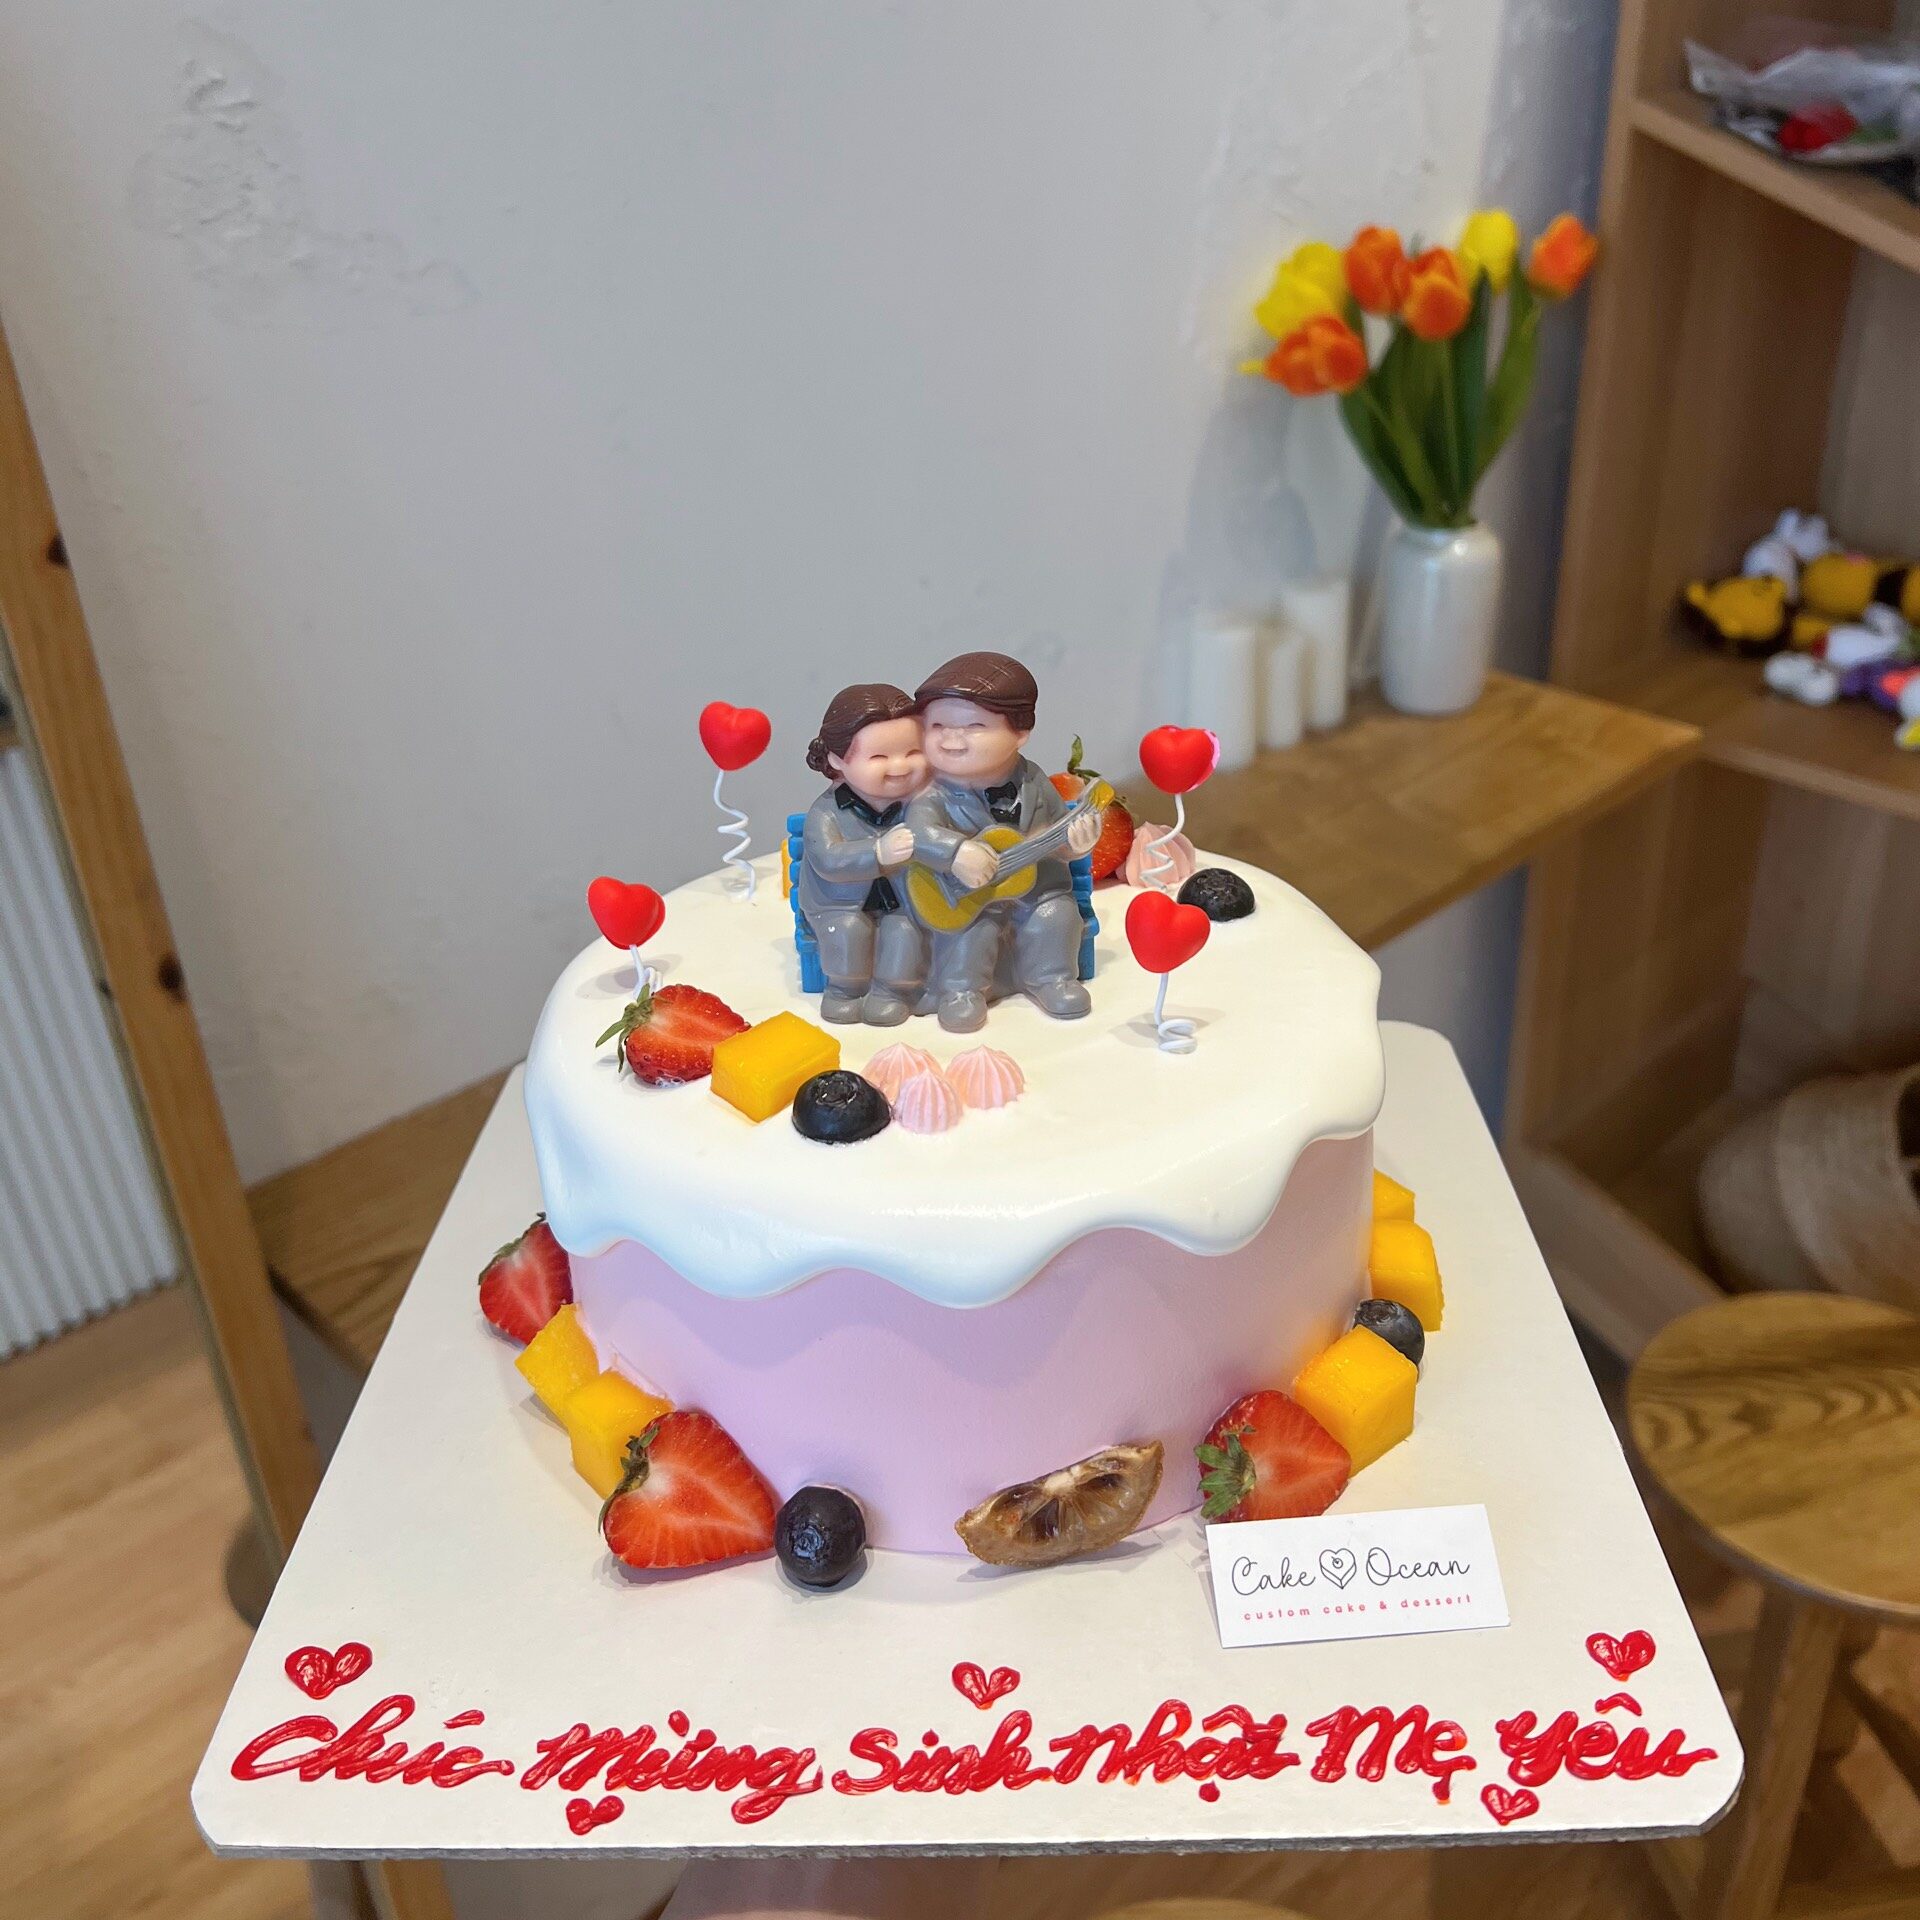 15 mẫu bánh sinh nhật cho mẹ đẹp lung linh trong năm 2020 – Quacaocap.com.vn